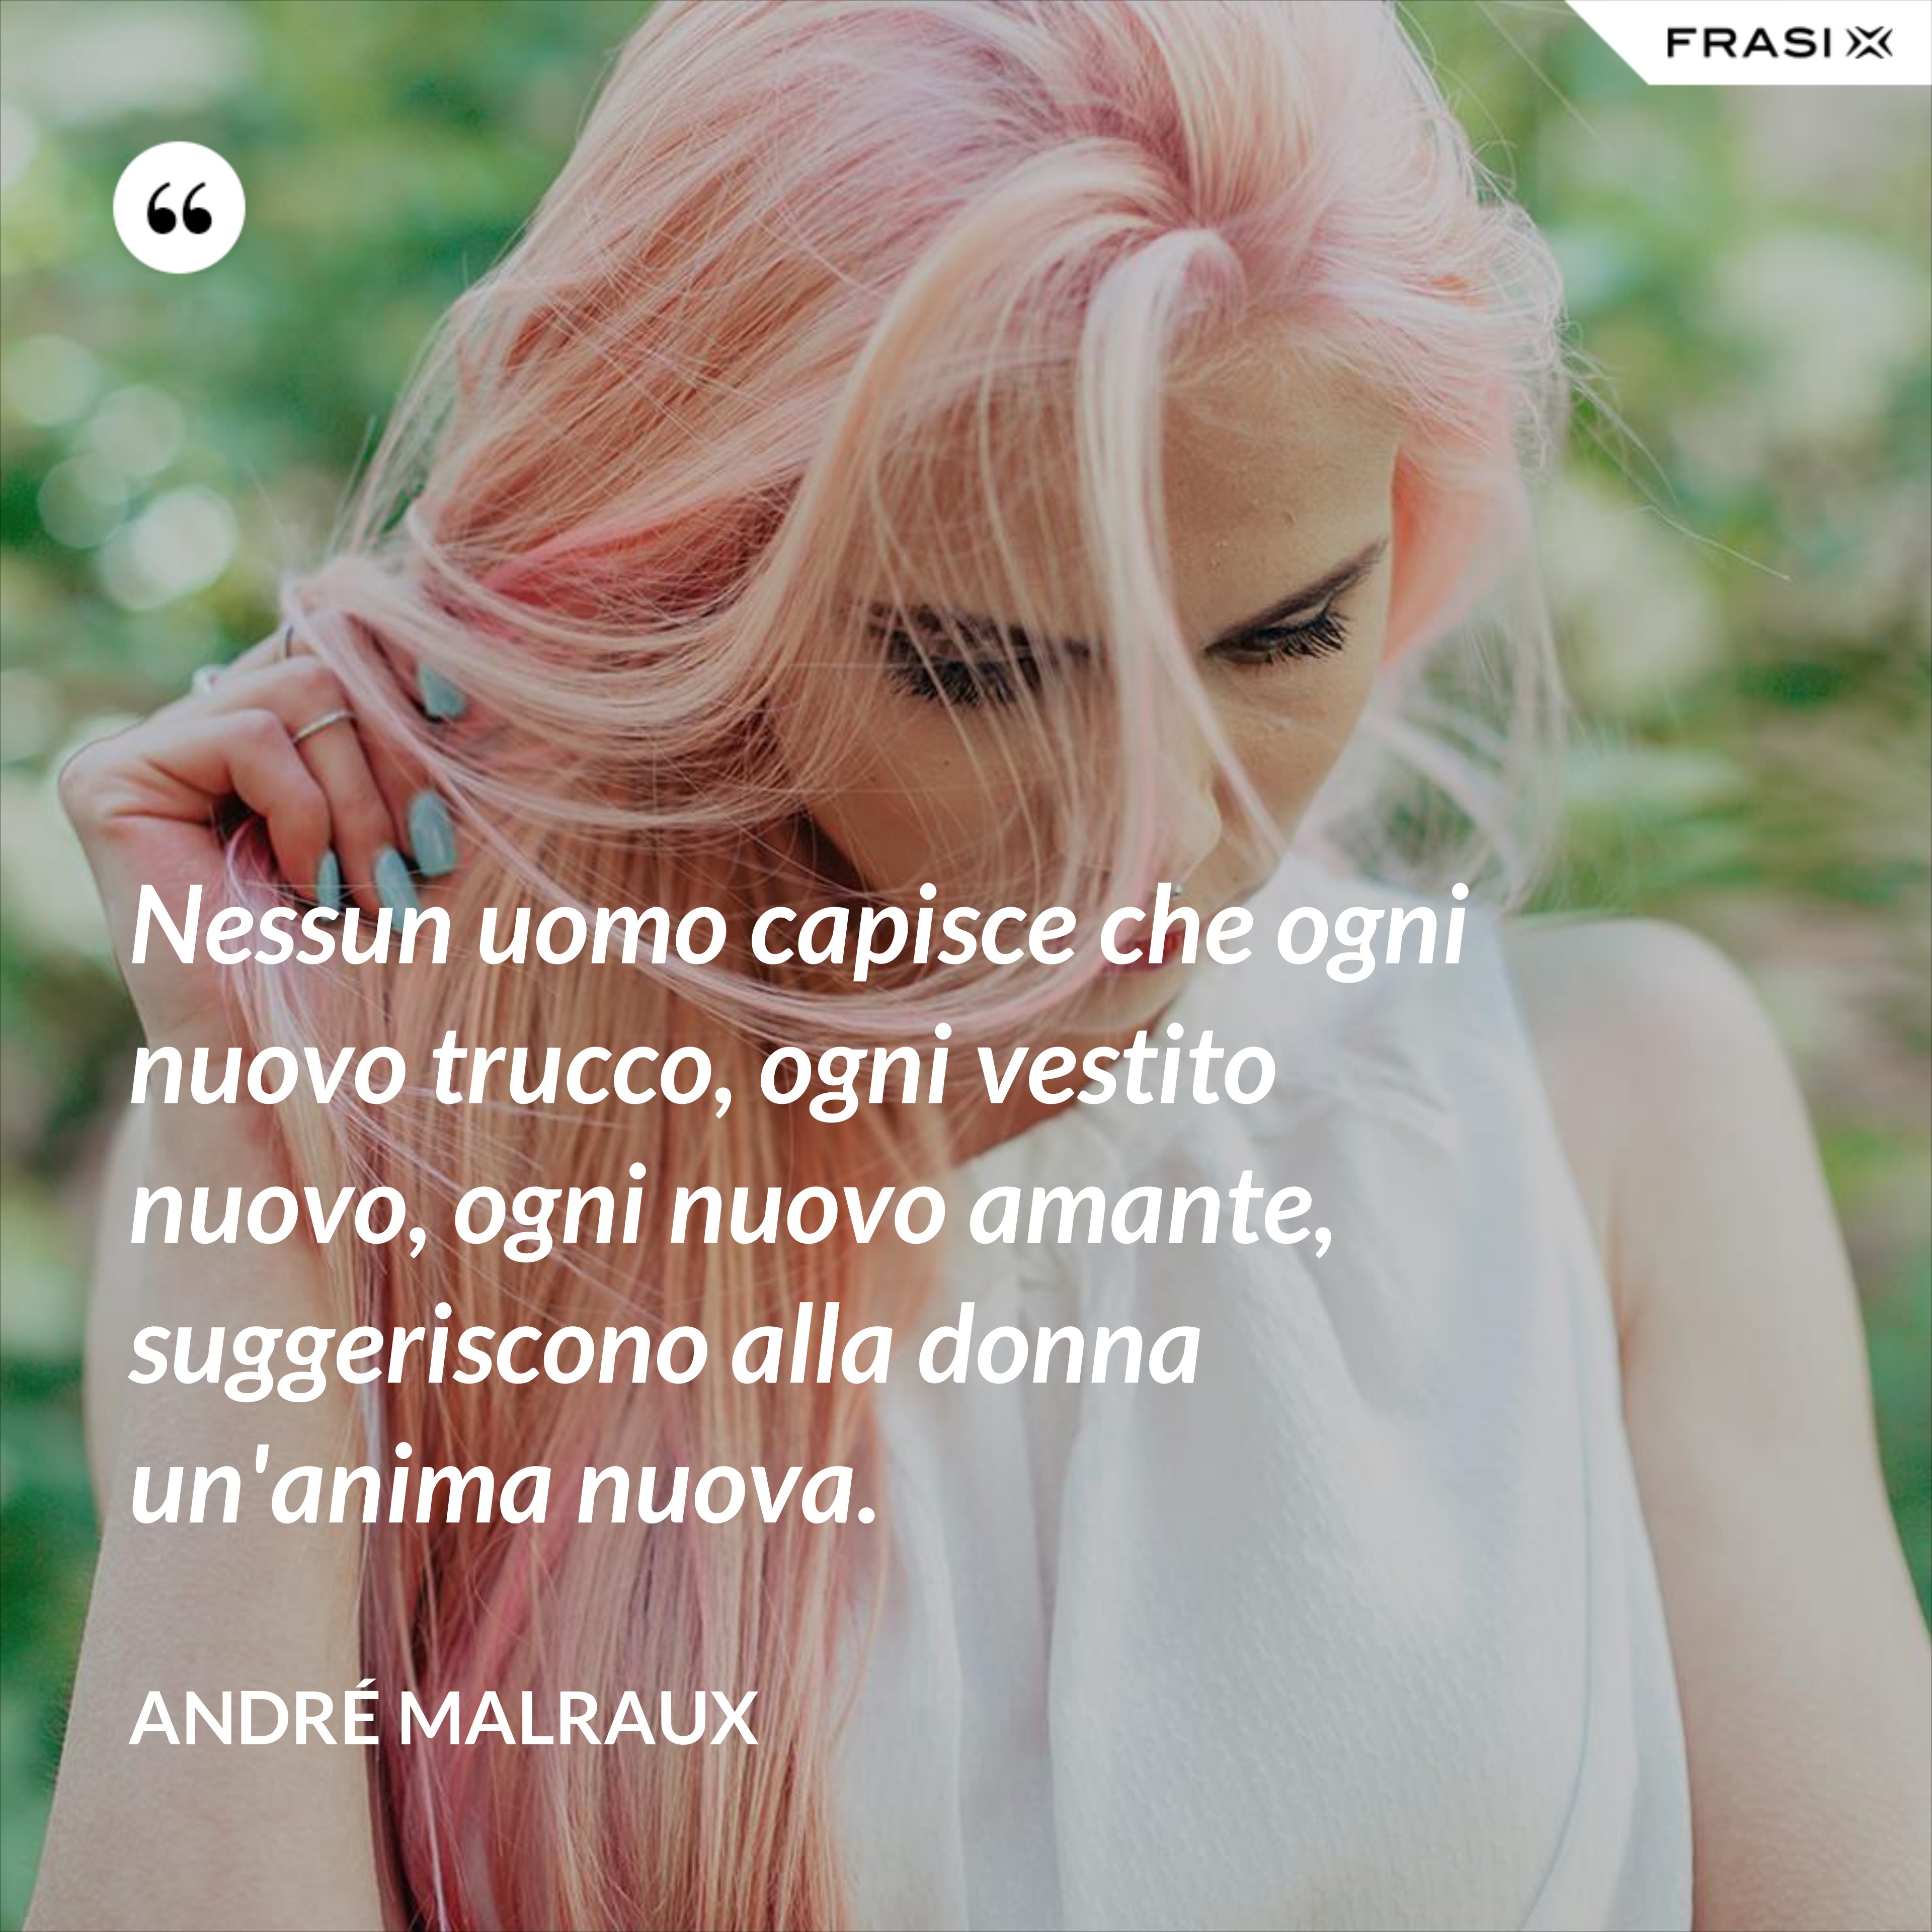 Nessun uomo capisce che ogni nuovo trucco, ogni vestito nuovo, ogni nuovo amante, suggeriscono alla donna un'anima nuova. - André Malraux